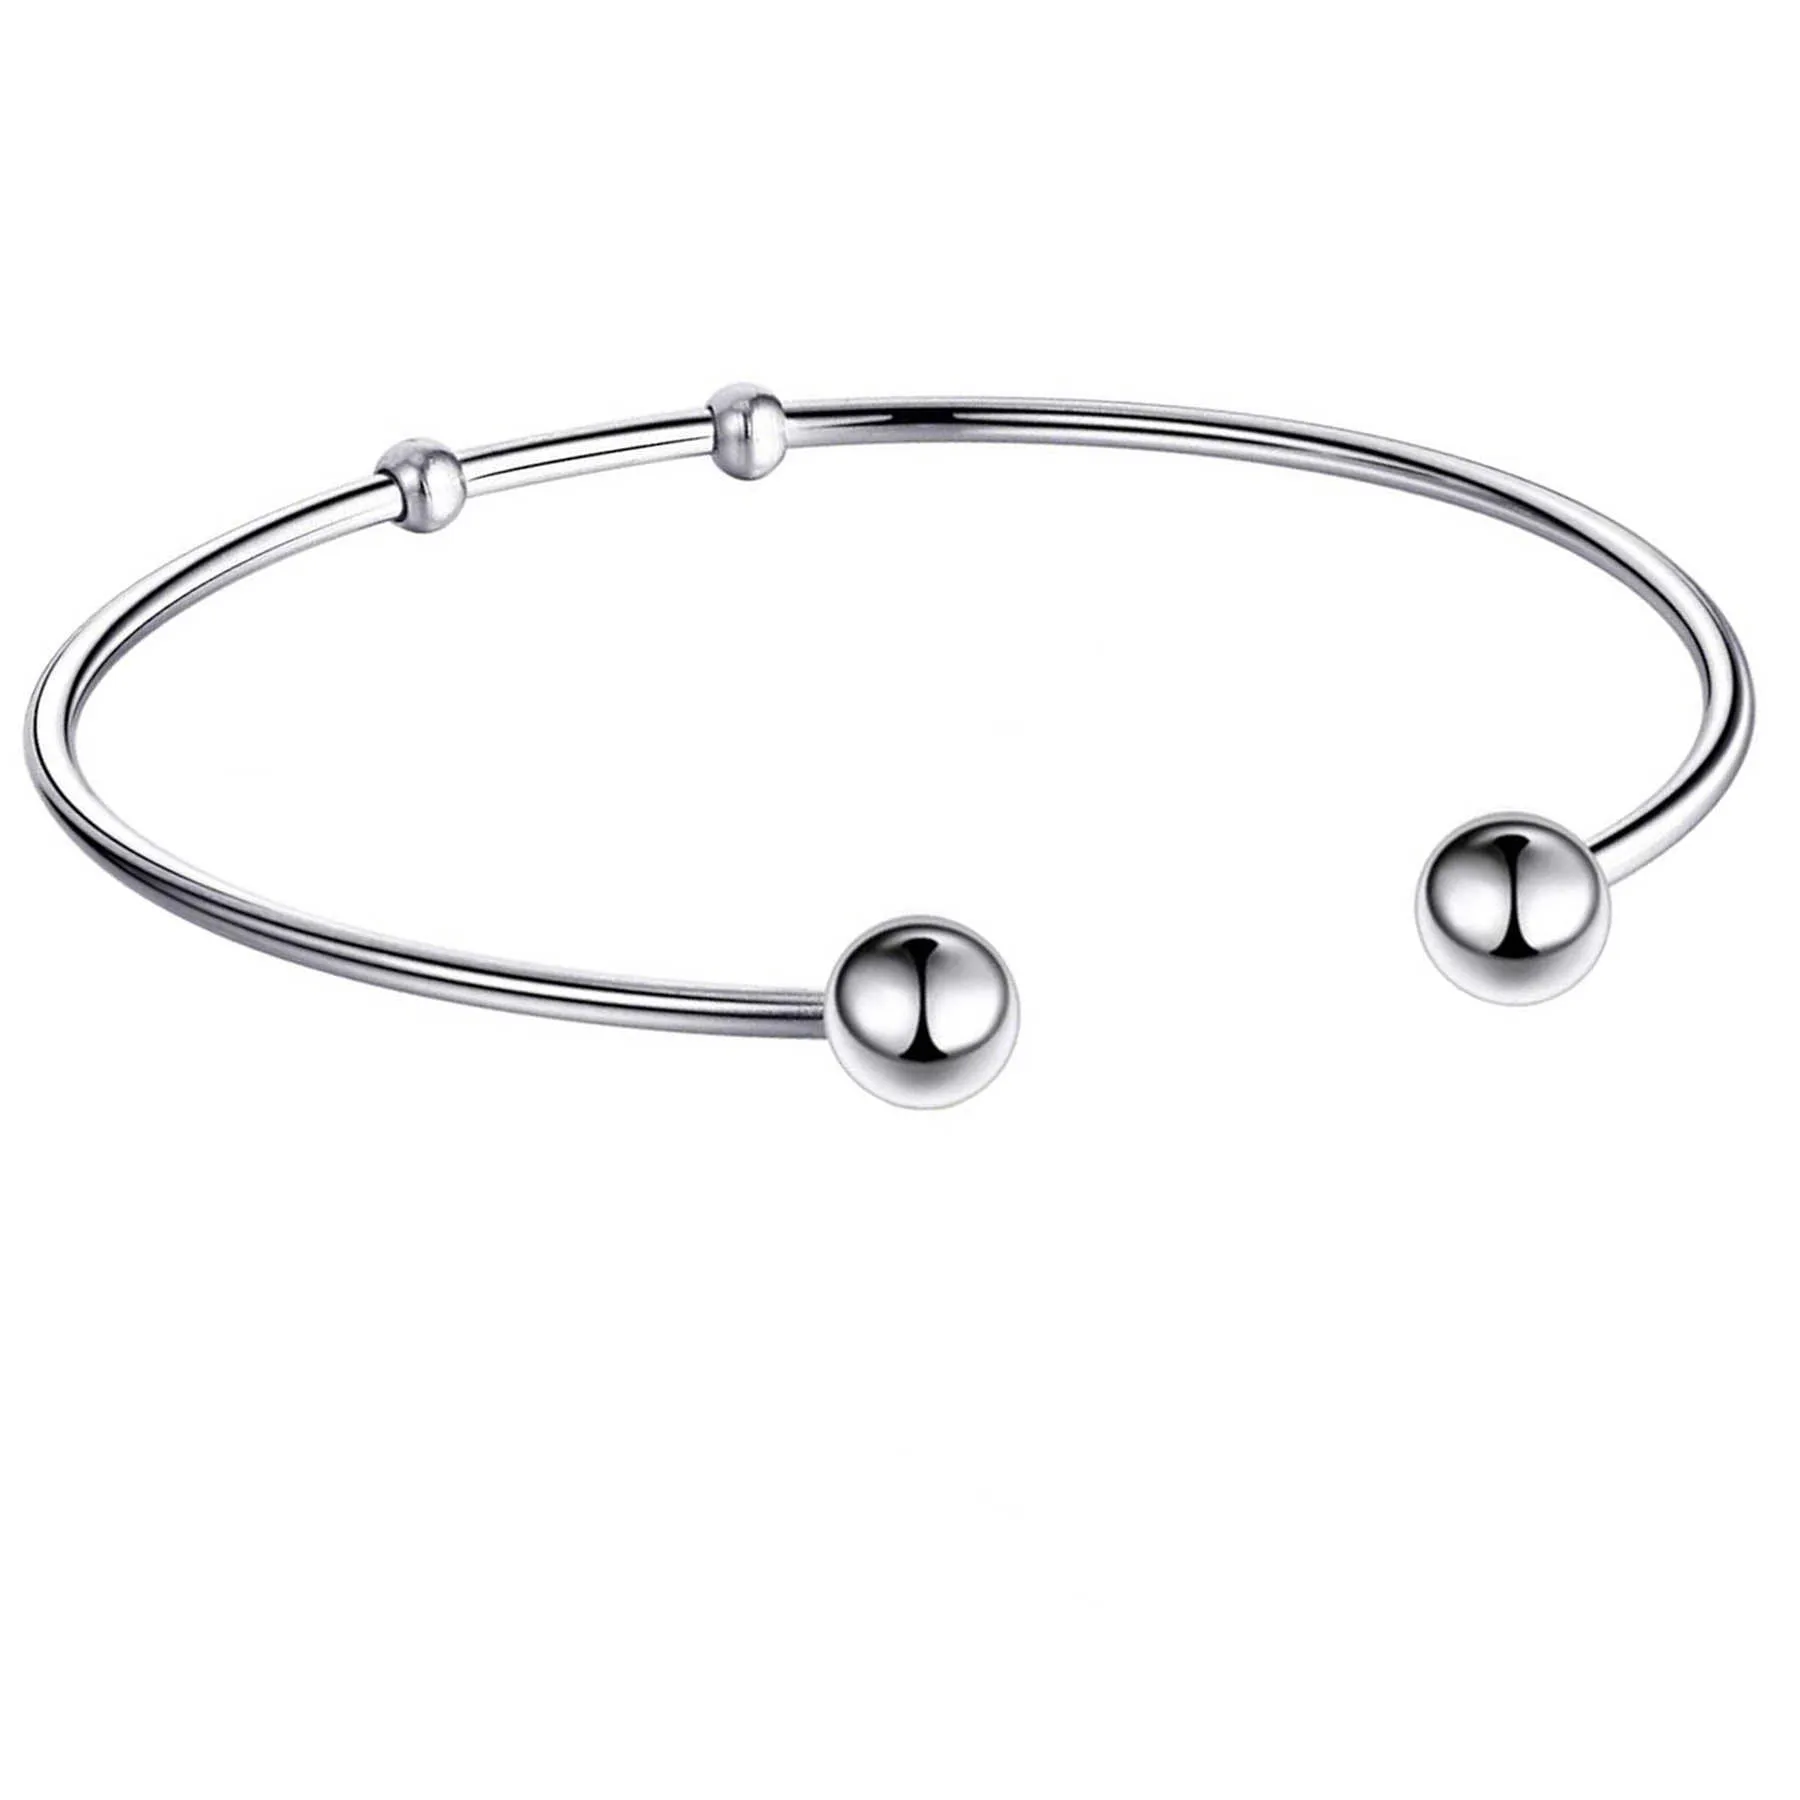 Gioielli di fascino del braccialetto espandibile del metallo dell'acciaio inossidabile di modo che fanno i regali dei braccialetti dei braccialetti Q0719